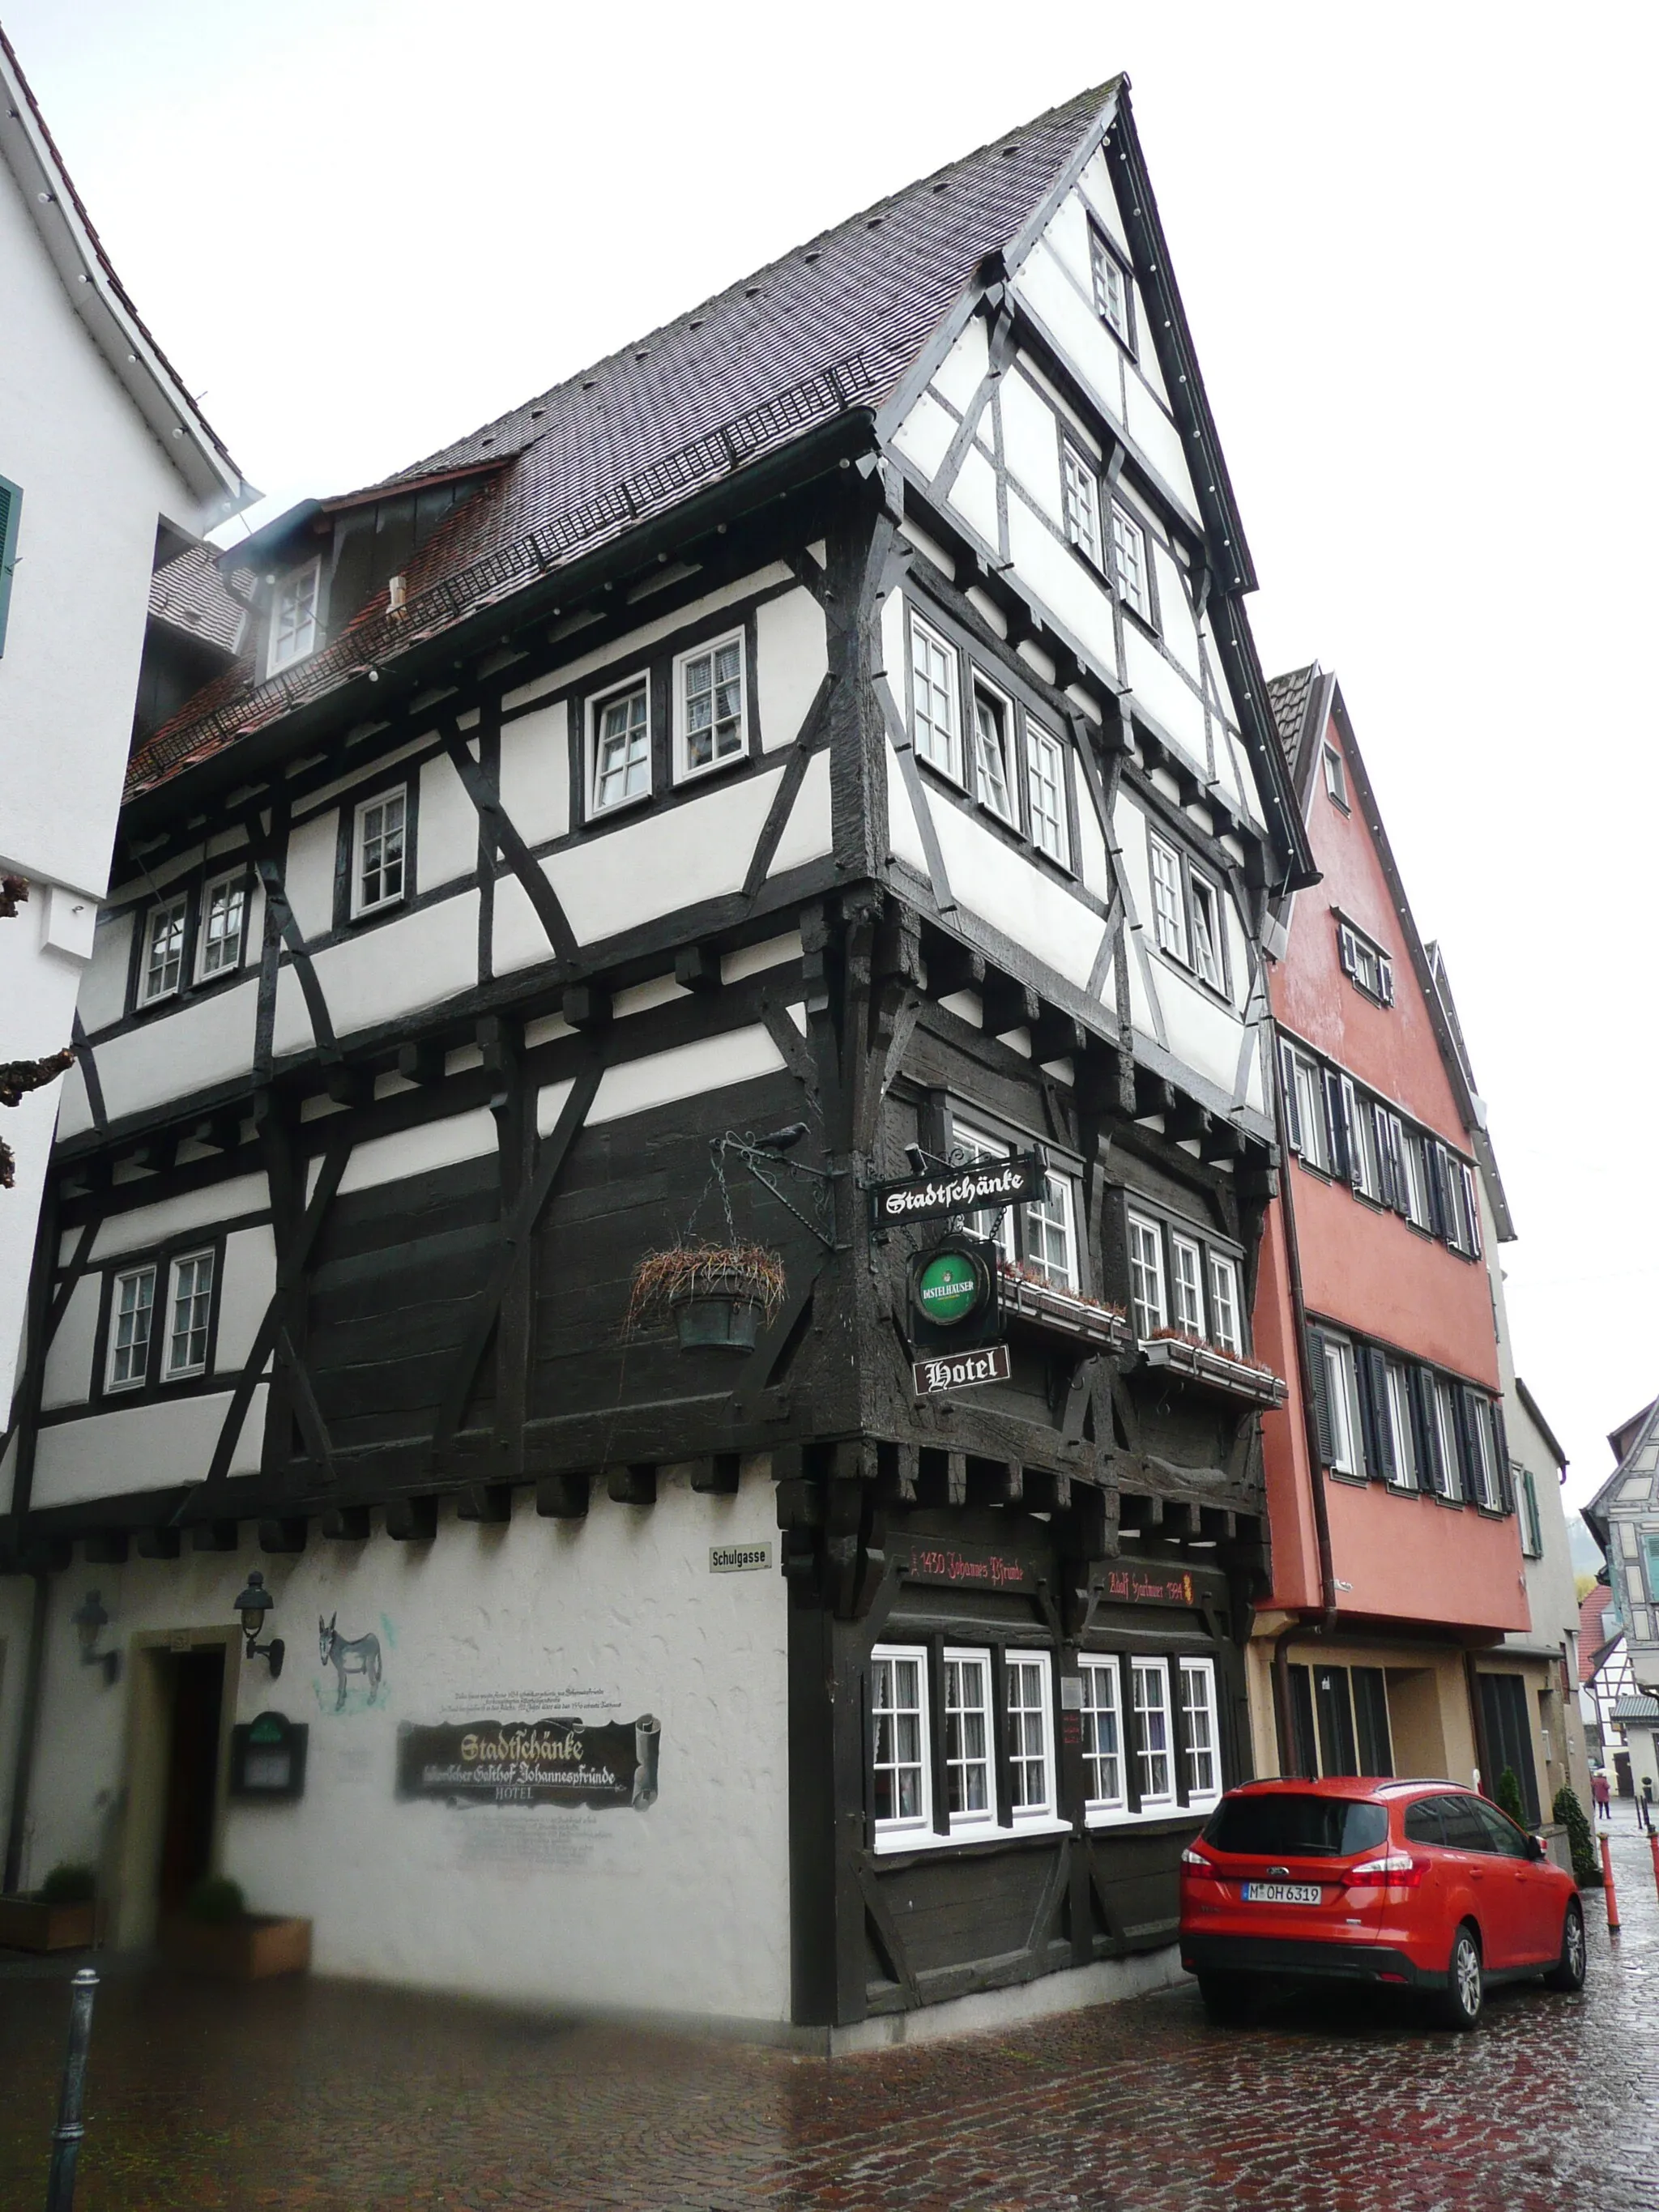 Photo showing: Großbottwar: Stadtschänke, historischer Gasthof Johannespfründe, Hotel, 1434 erbaut